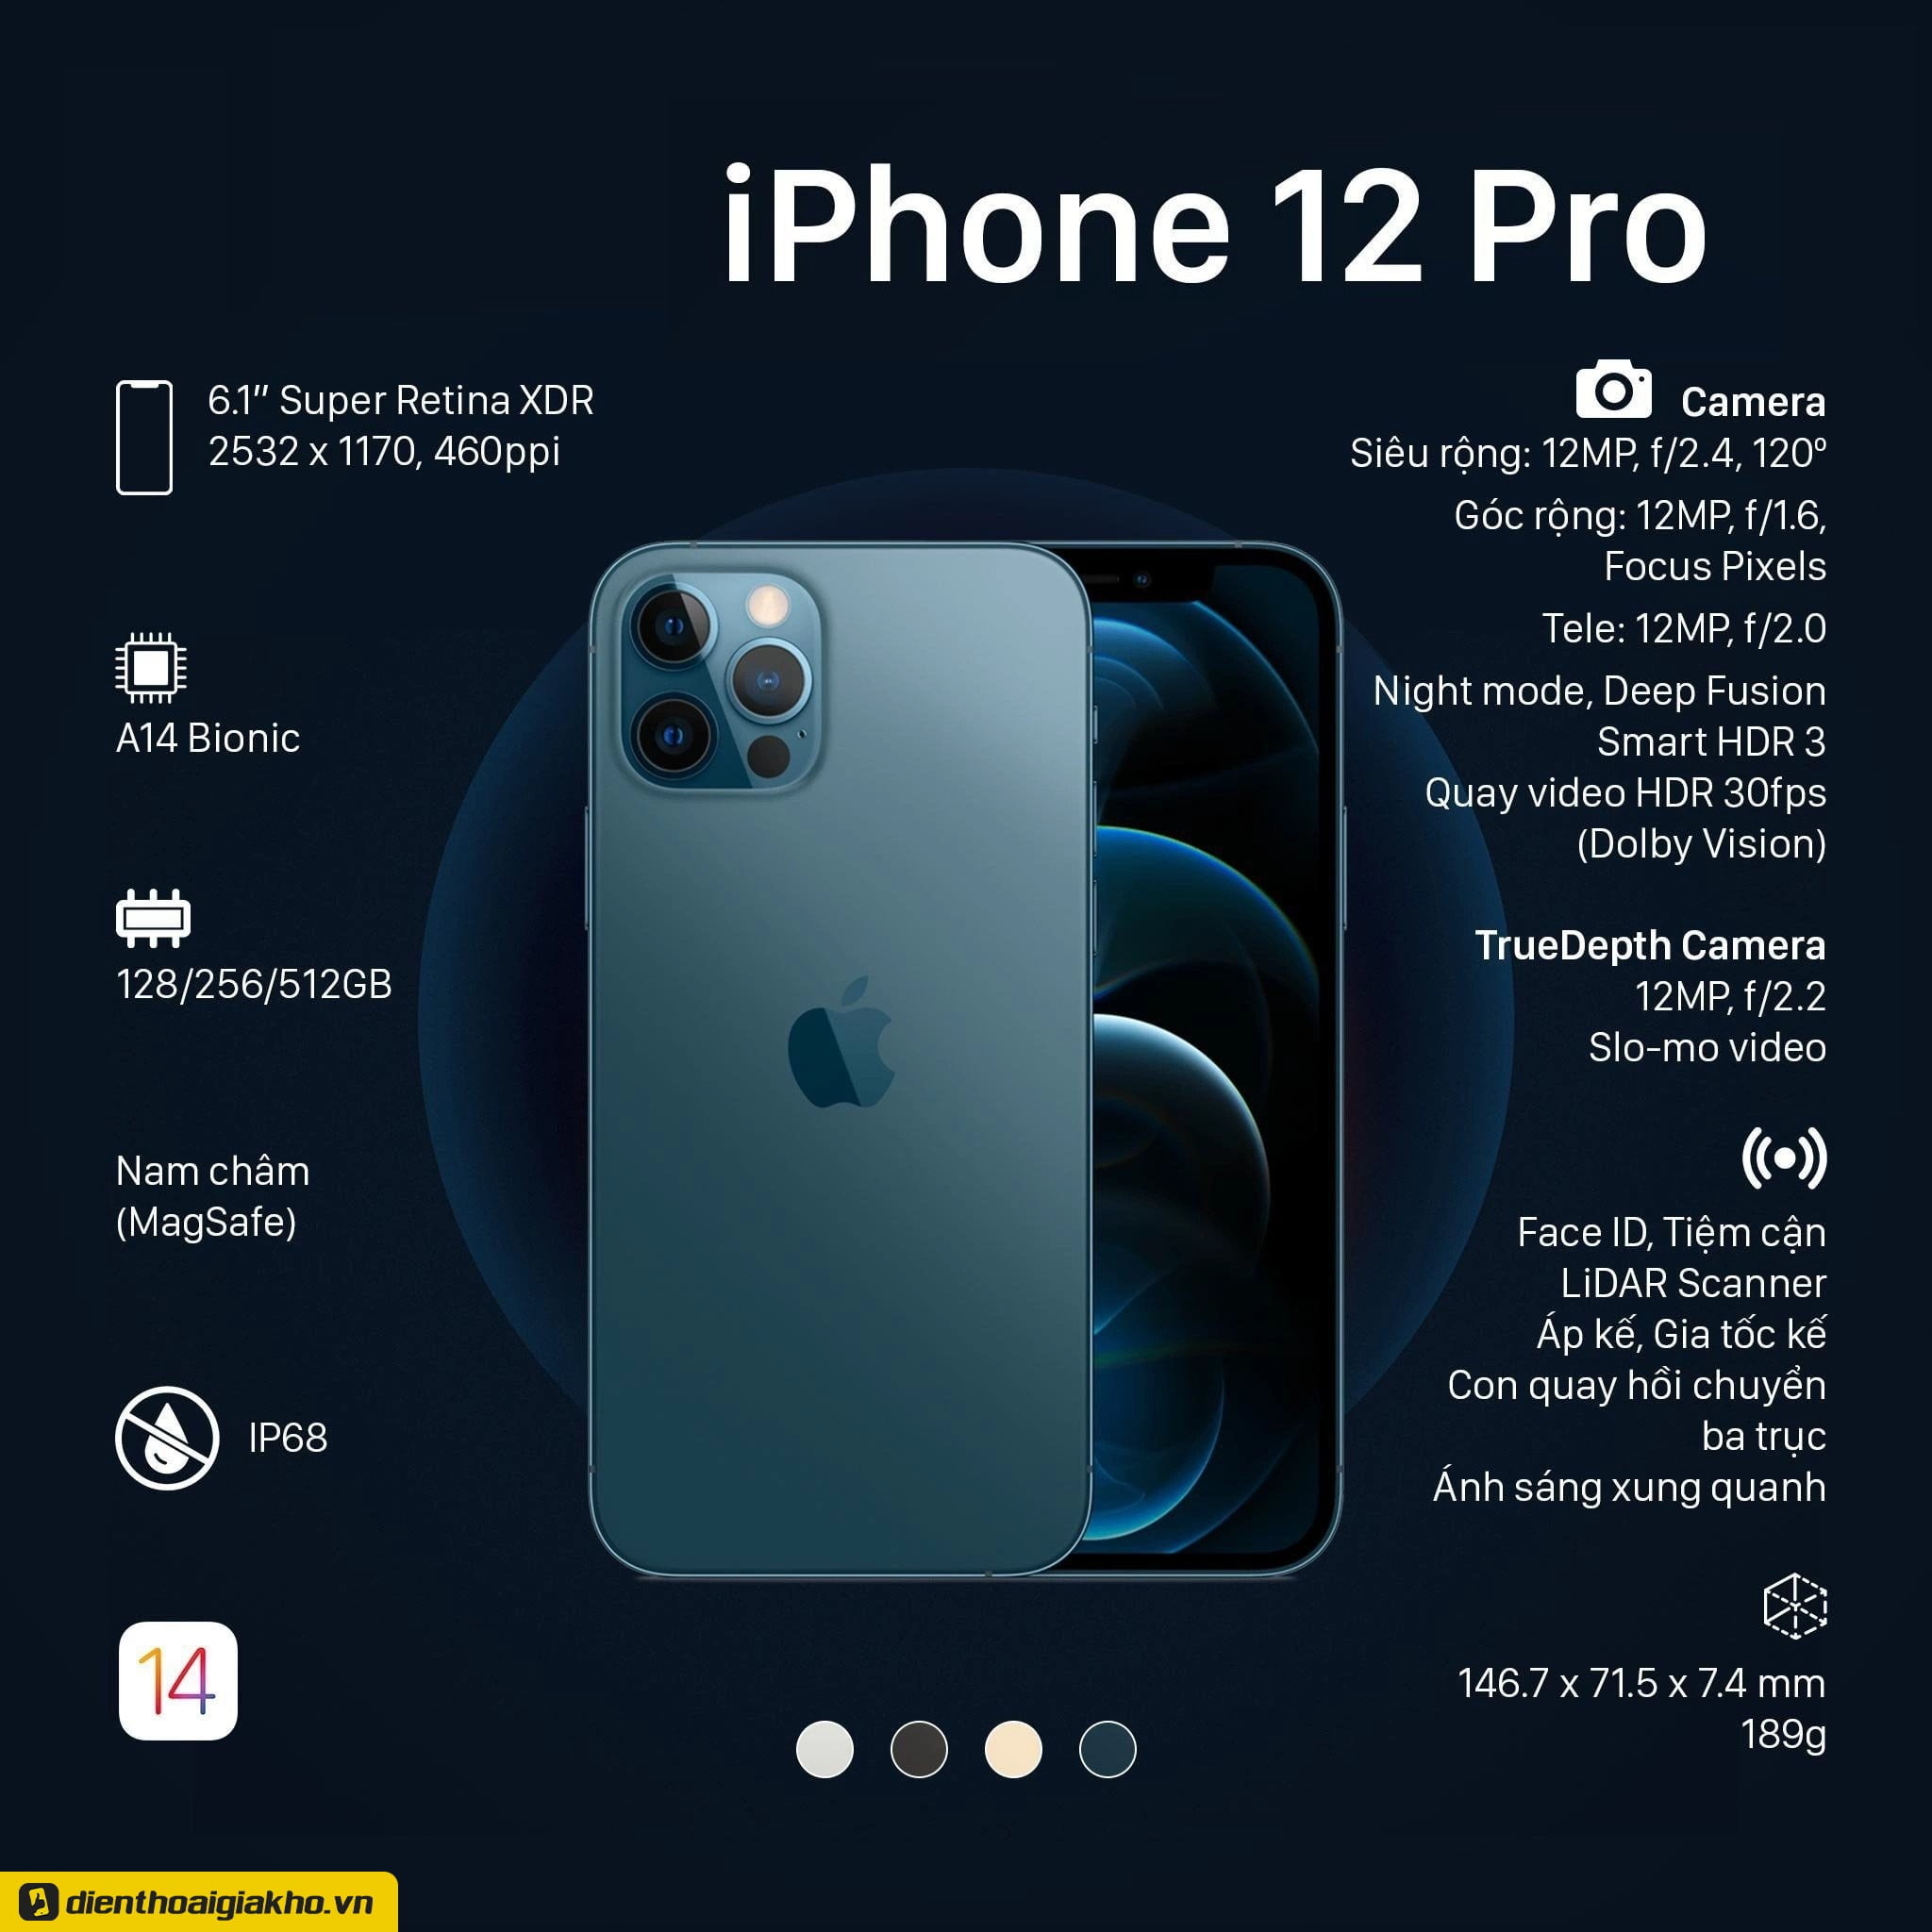 Thông số của iPhone 12 Pro